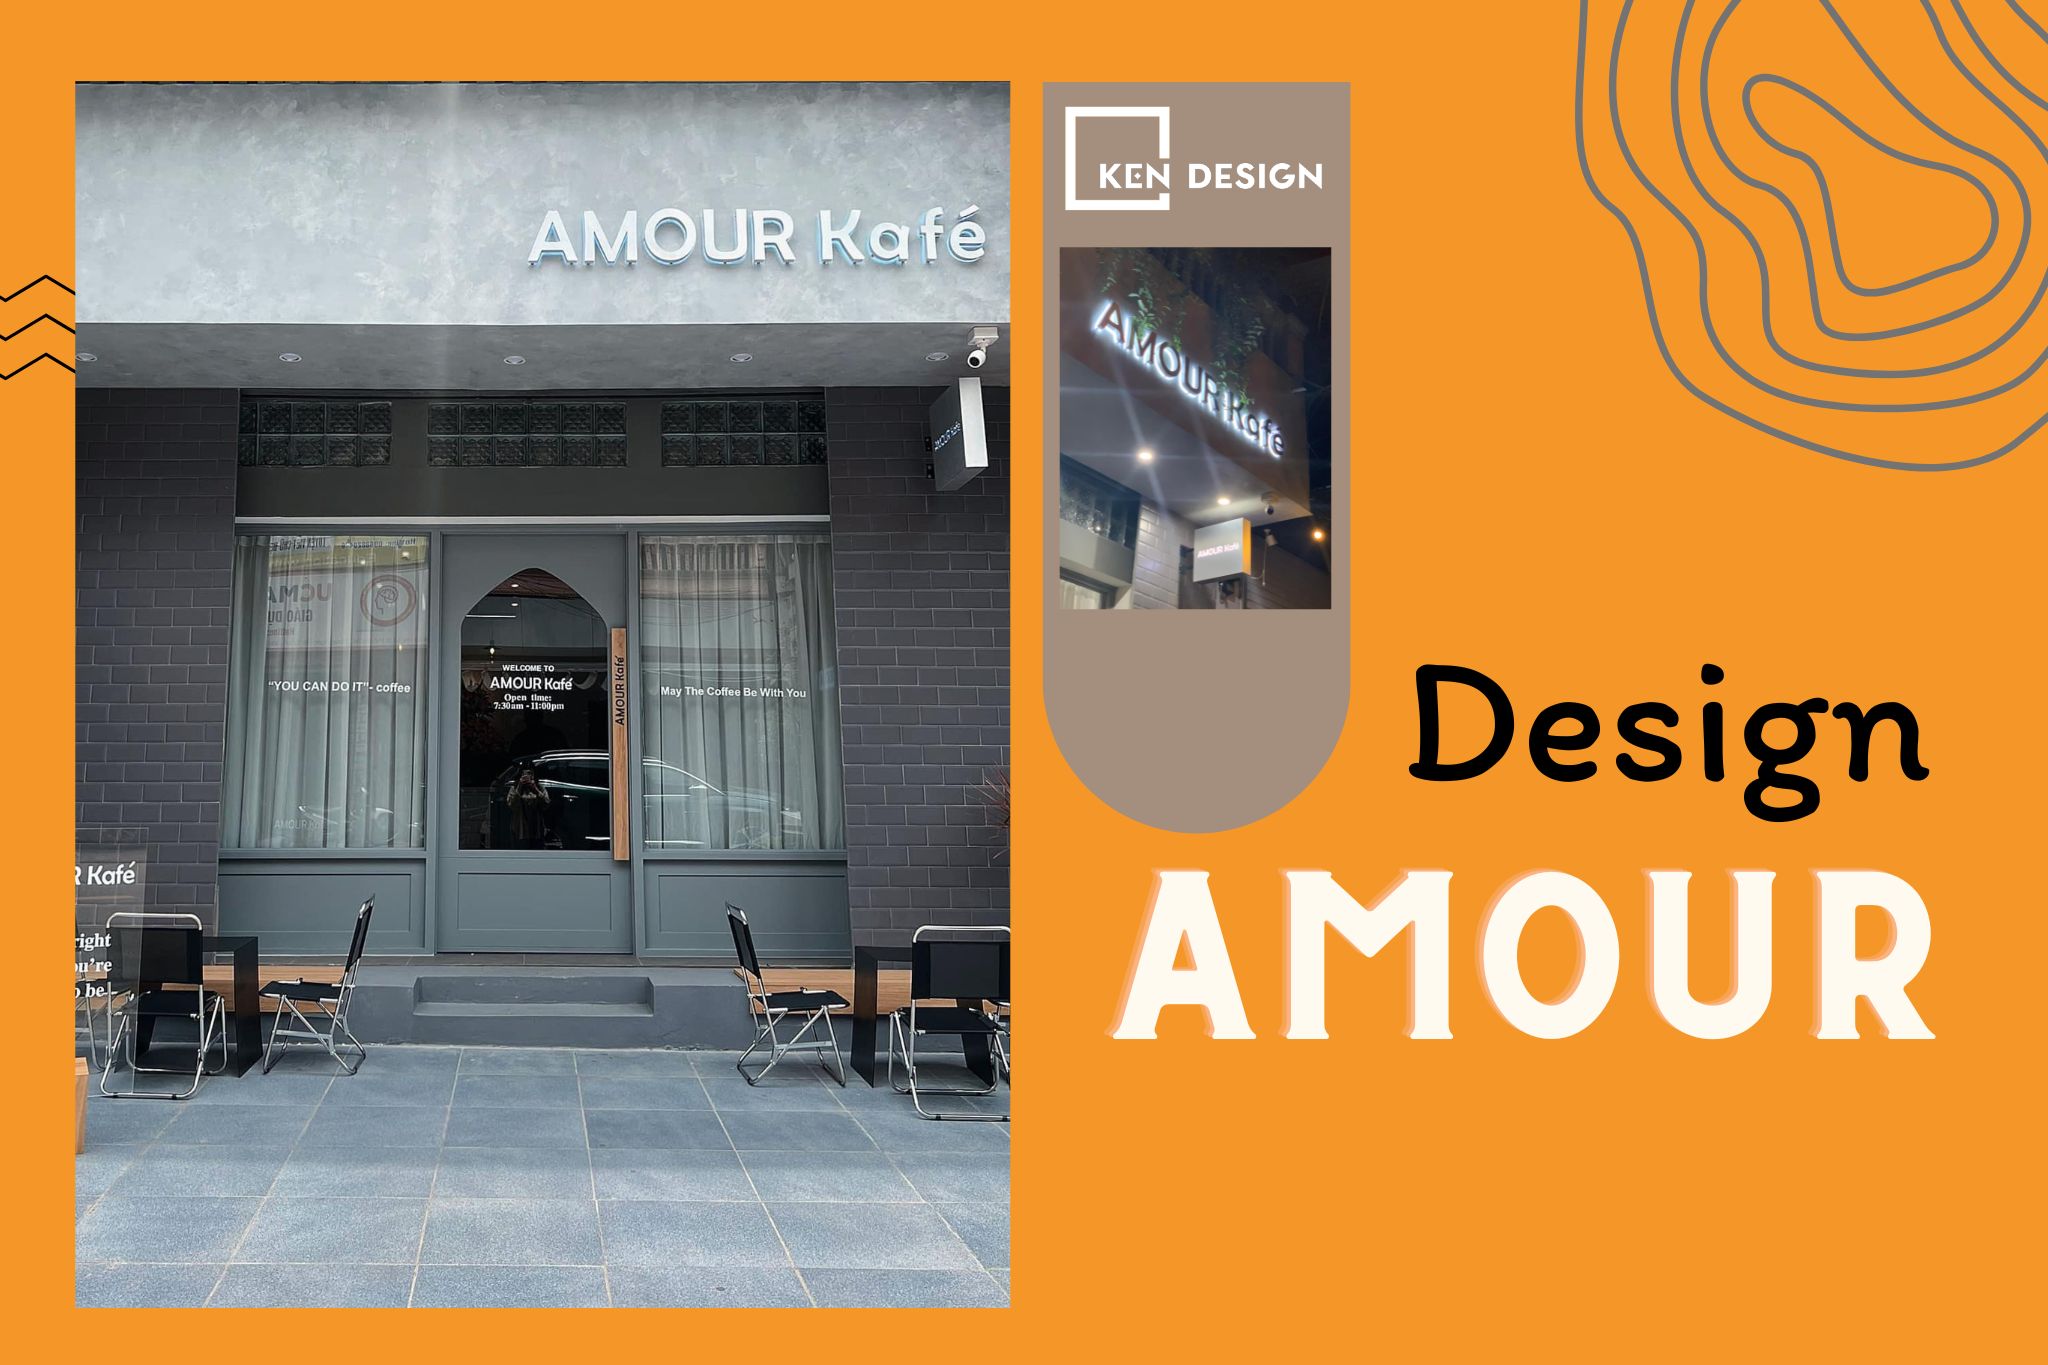 Thiết kế Amour Kafe - đơn giản, bắt trọn toàn bộ tiêu chuẩn thời thượng